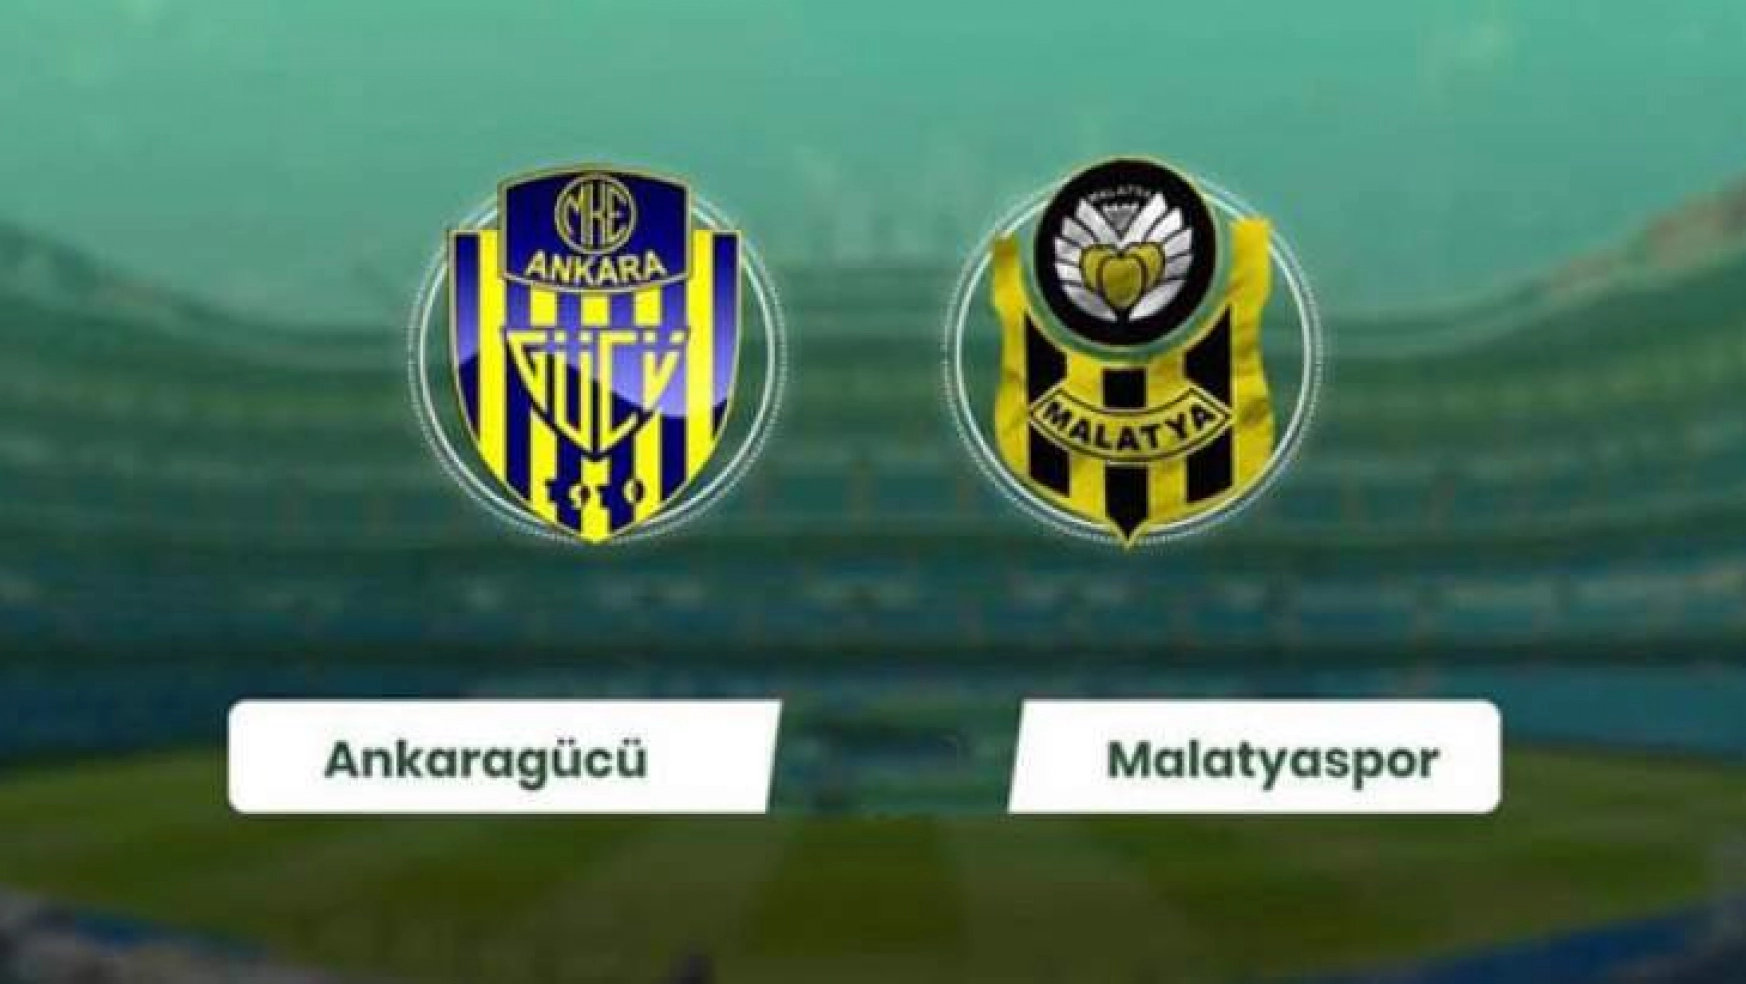 Yeni Malatyaspor, MKE Ankaragücü'ne konuk olacak